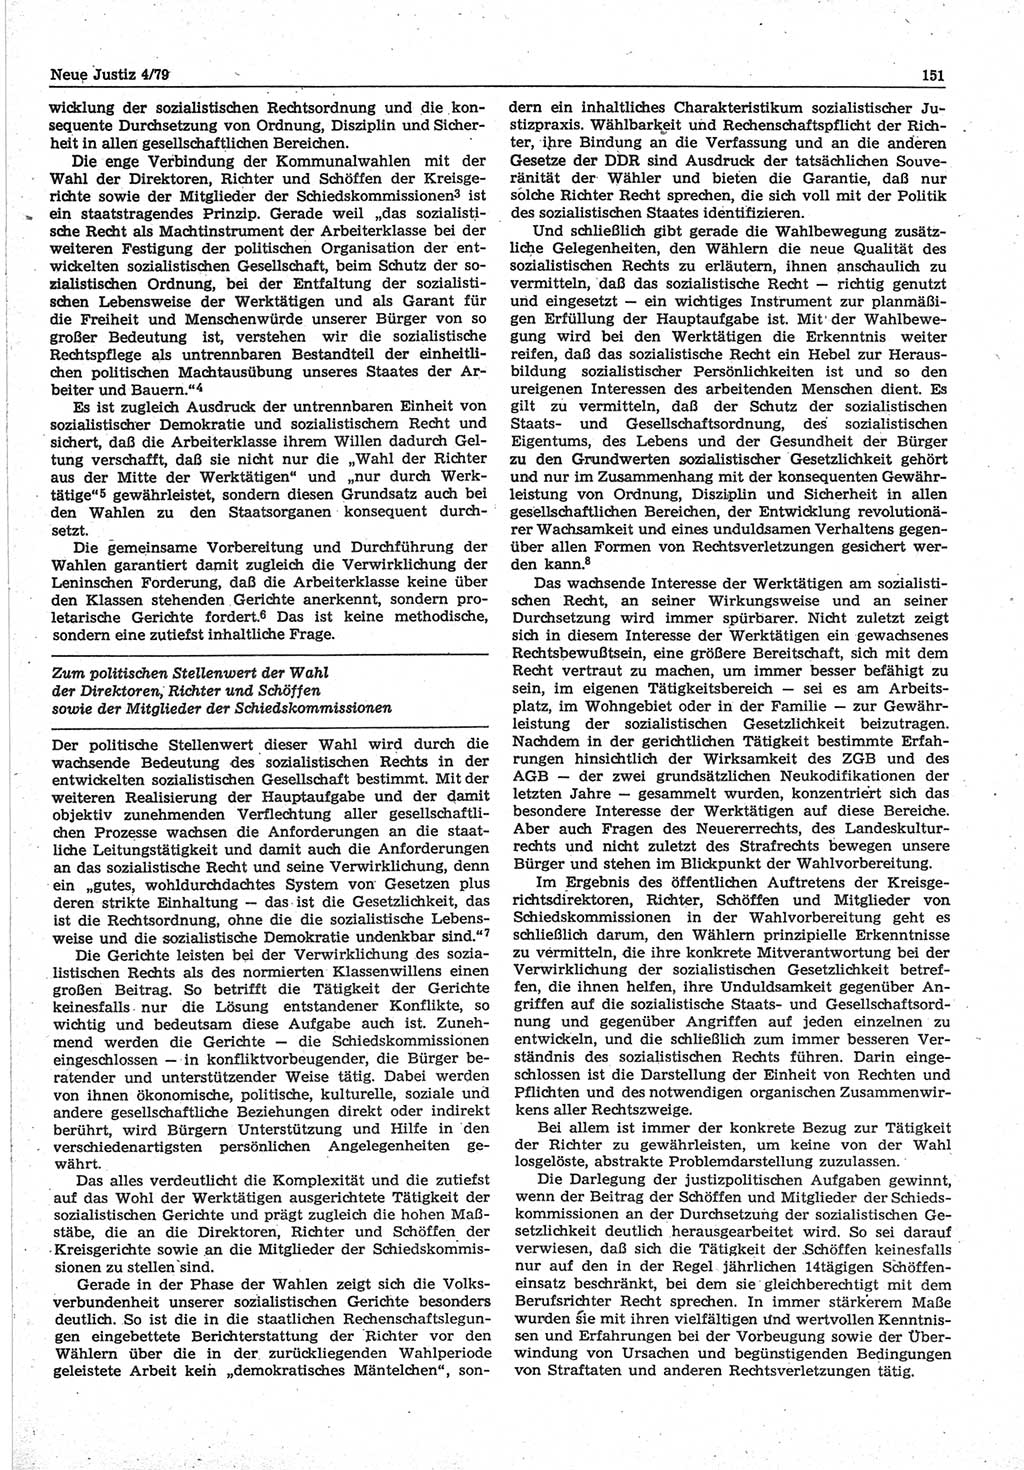 Neue Justiz (NJ), Zeitschrift für sozialistisches Recht und Gesetzlichkeit [Deutsche Demokratische Republik (DDR)], 33. Jahrgang 1979, Seite 151 (NJ DDR 1979, S. 151)